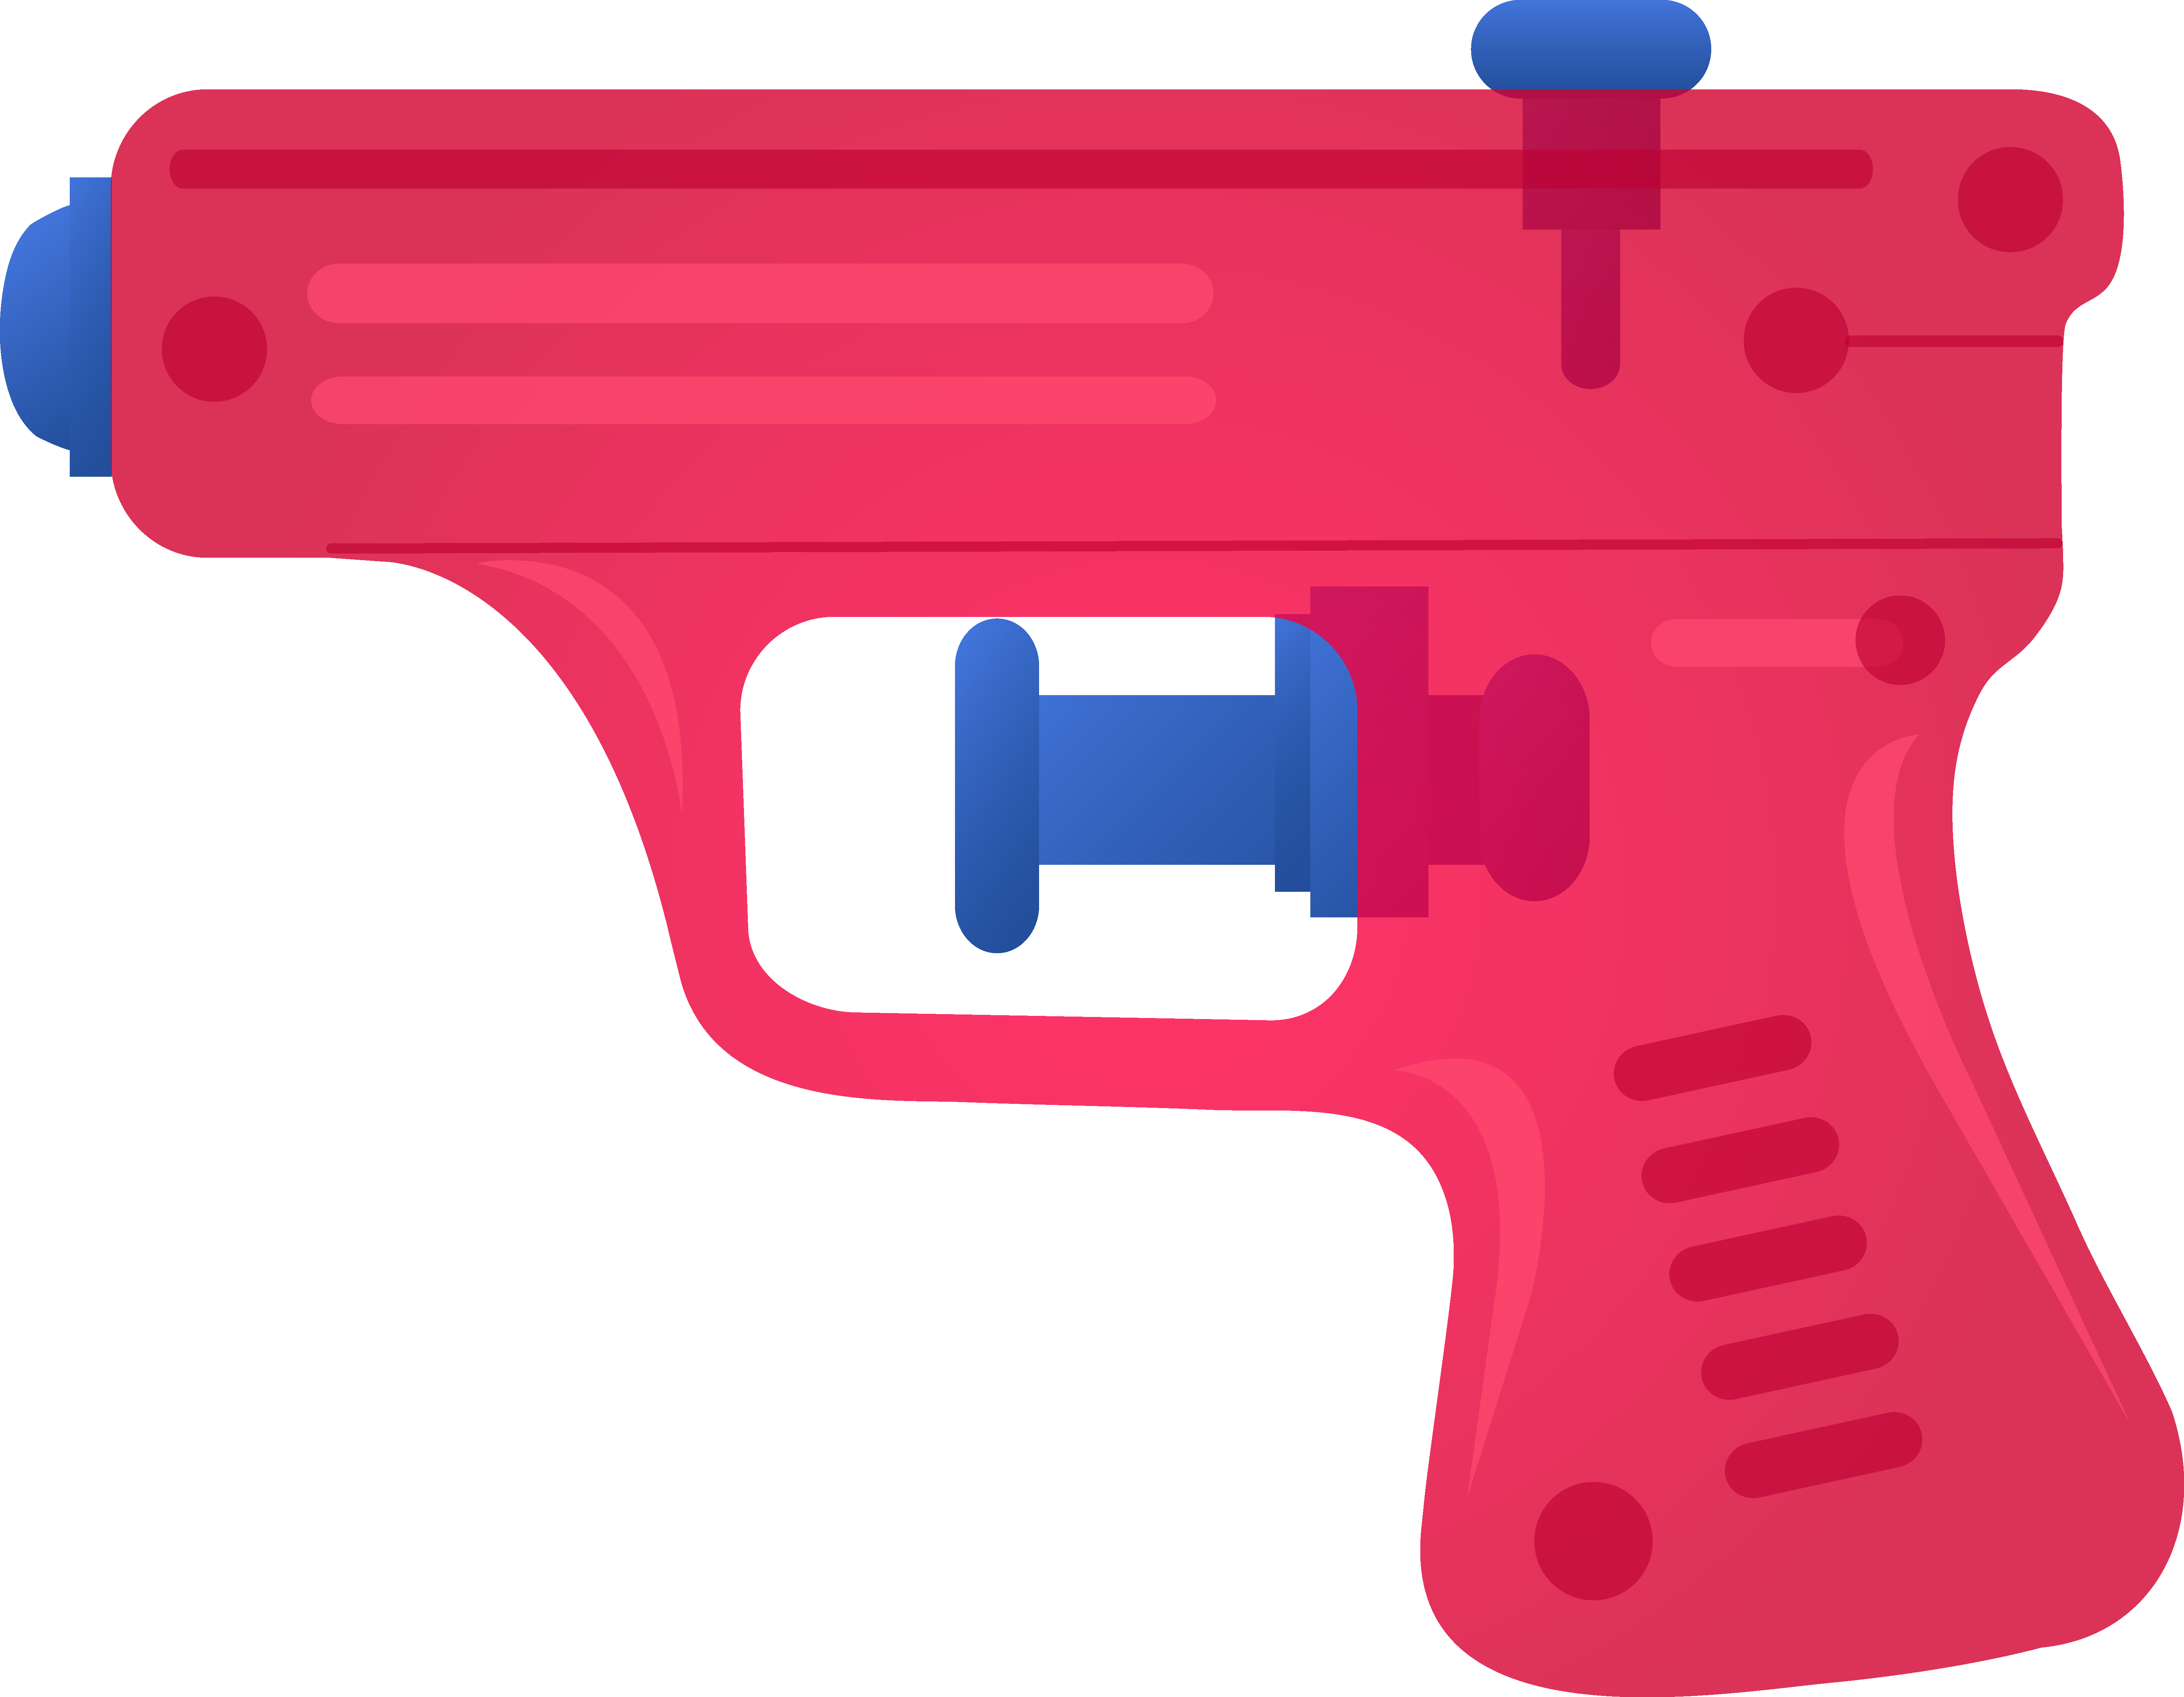 Toy gun clipart